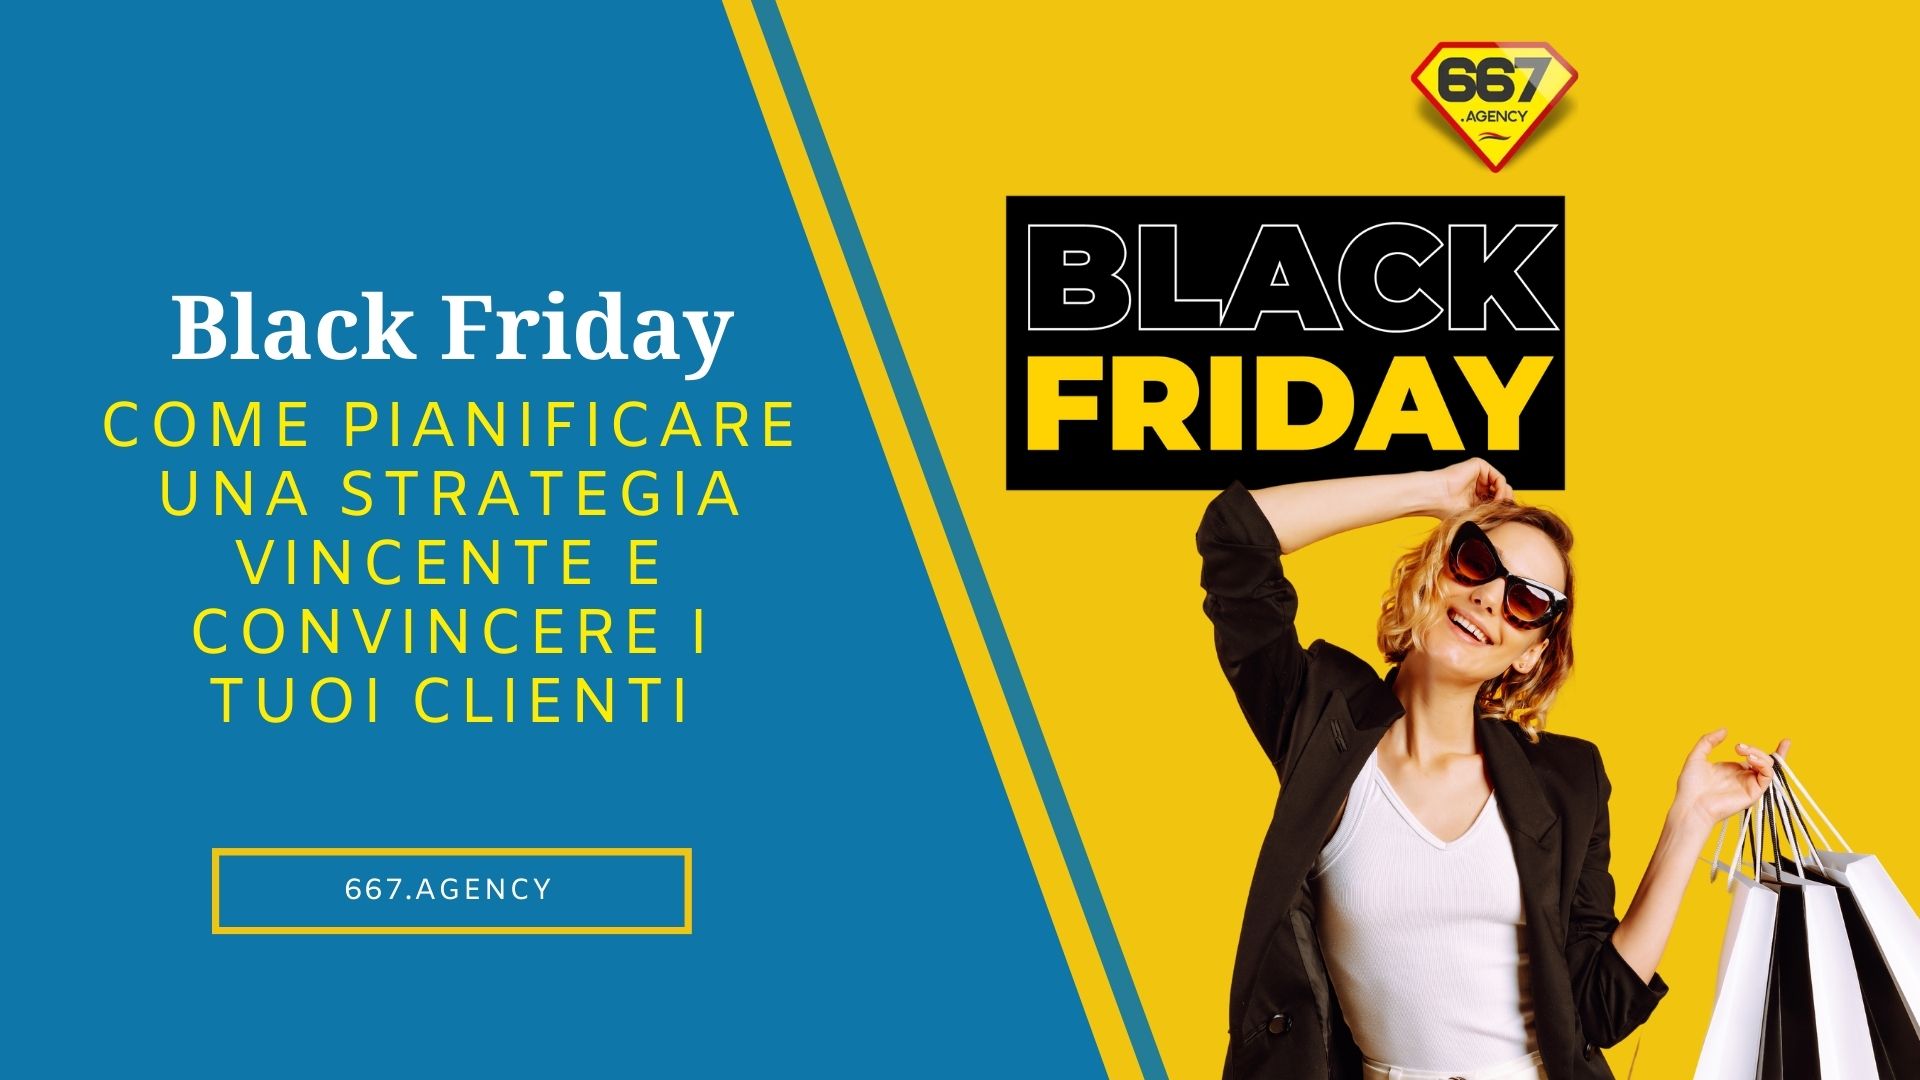 Black Friday: come pianificare una strategia vincente e convincere i tuoi clienti